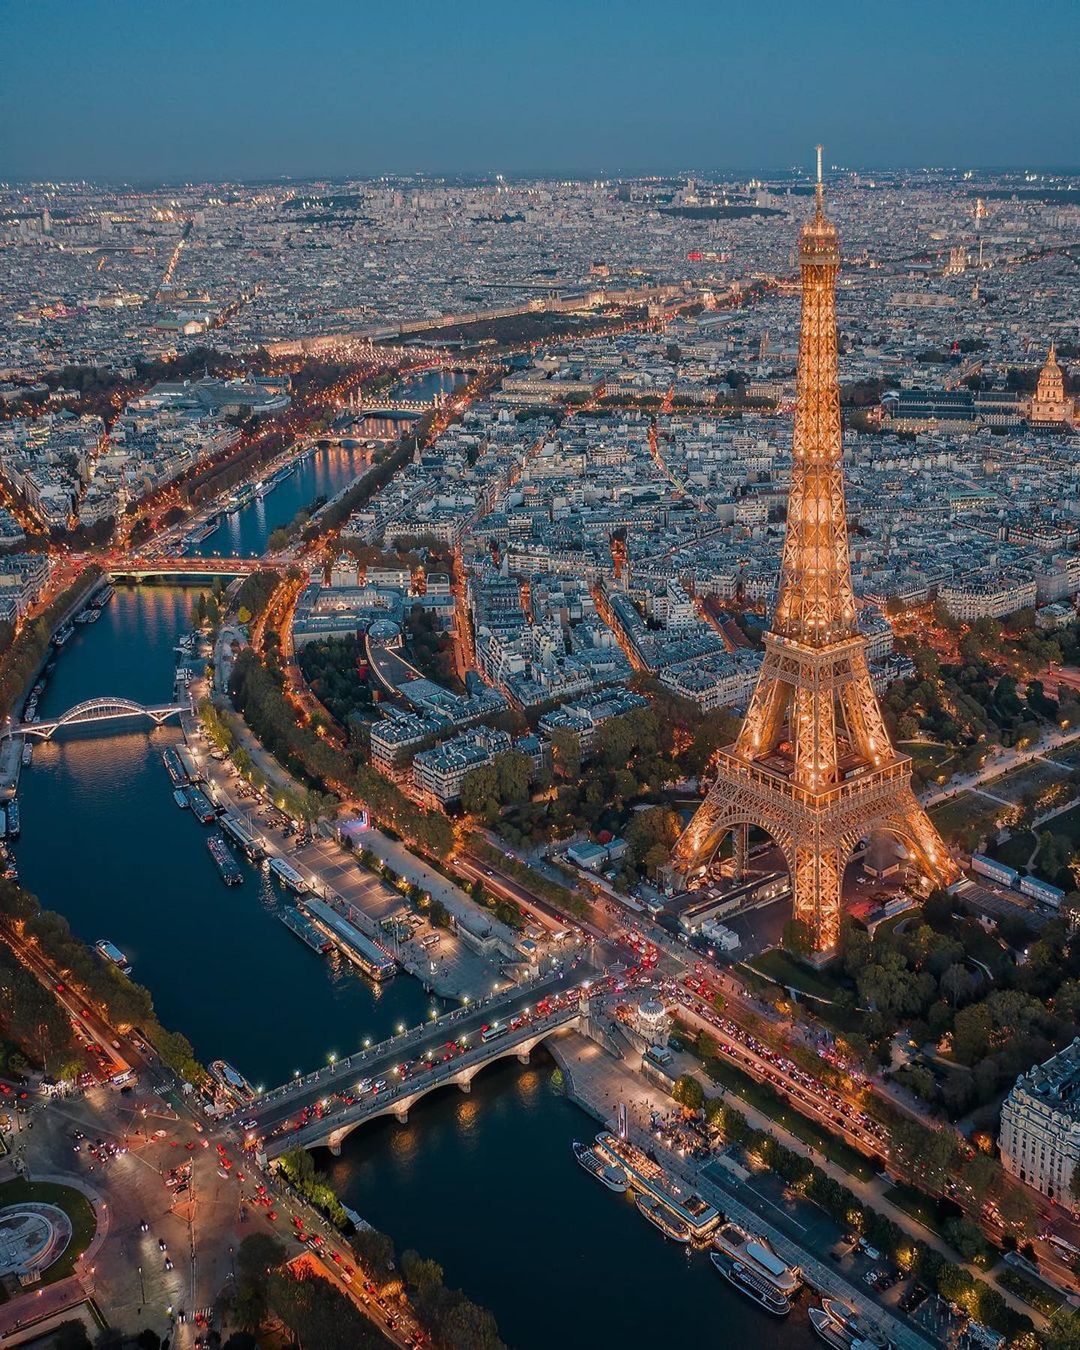 Veduta panoramica della capitale francese e delle sue mille luci (Instagram)